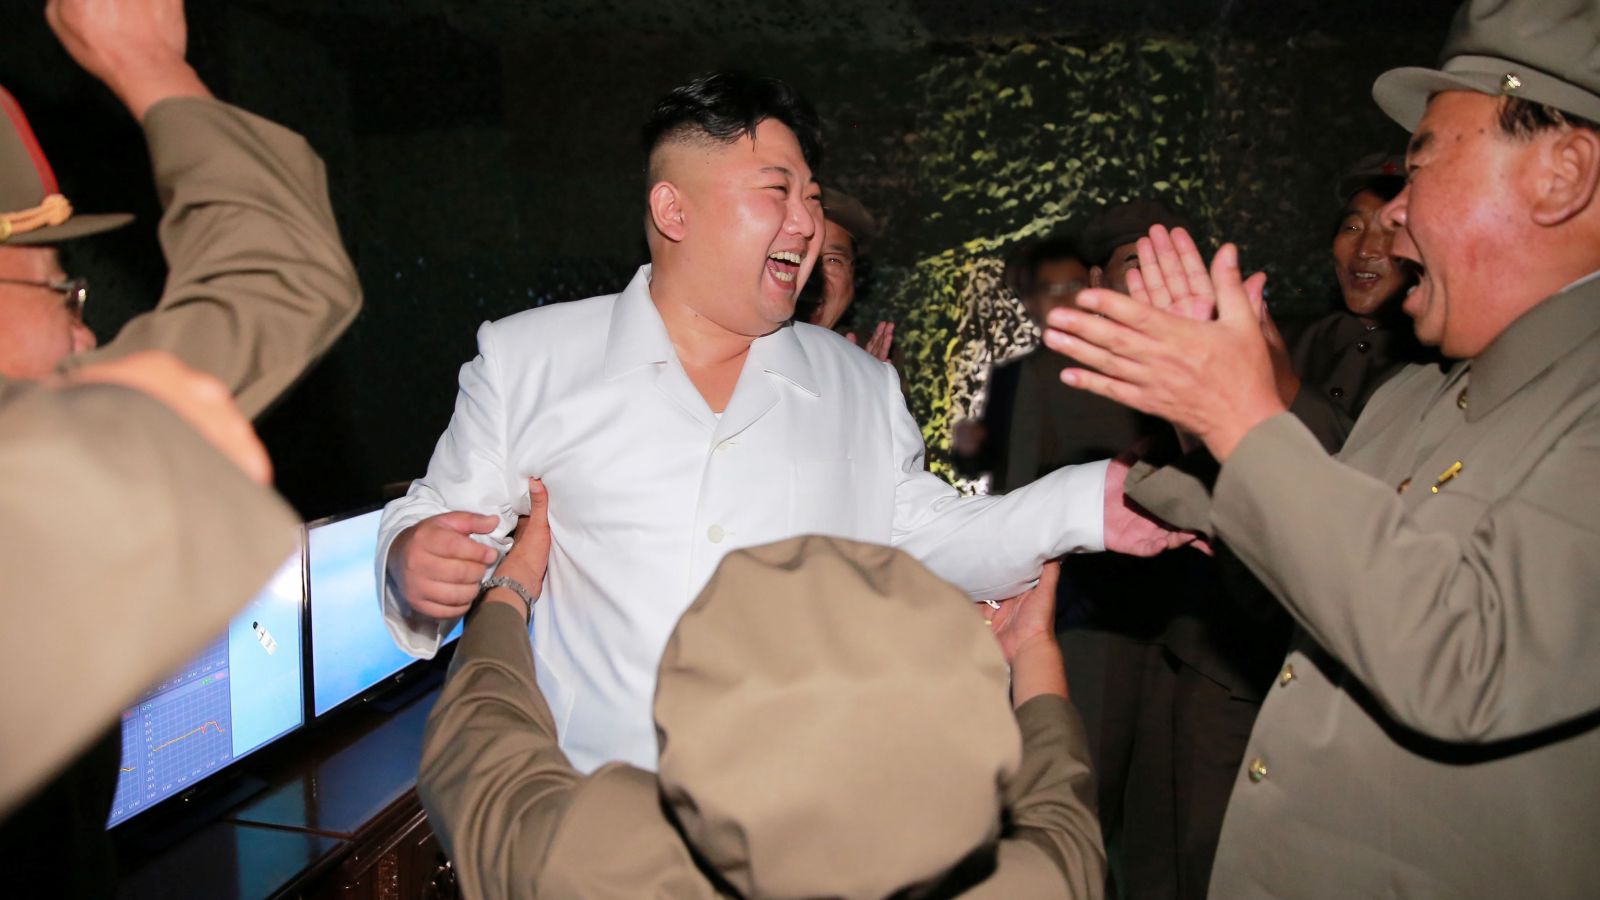 هذا ما يشعر به الزعيم الكوري الشمالي بعد تجربة "البالستي"